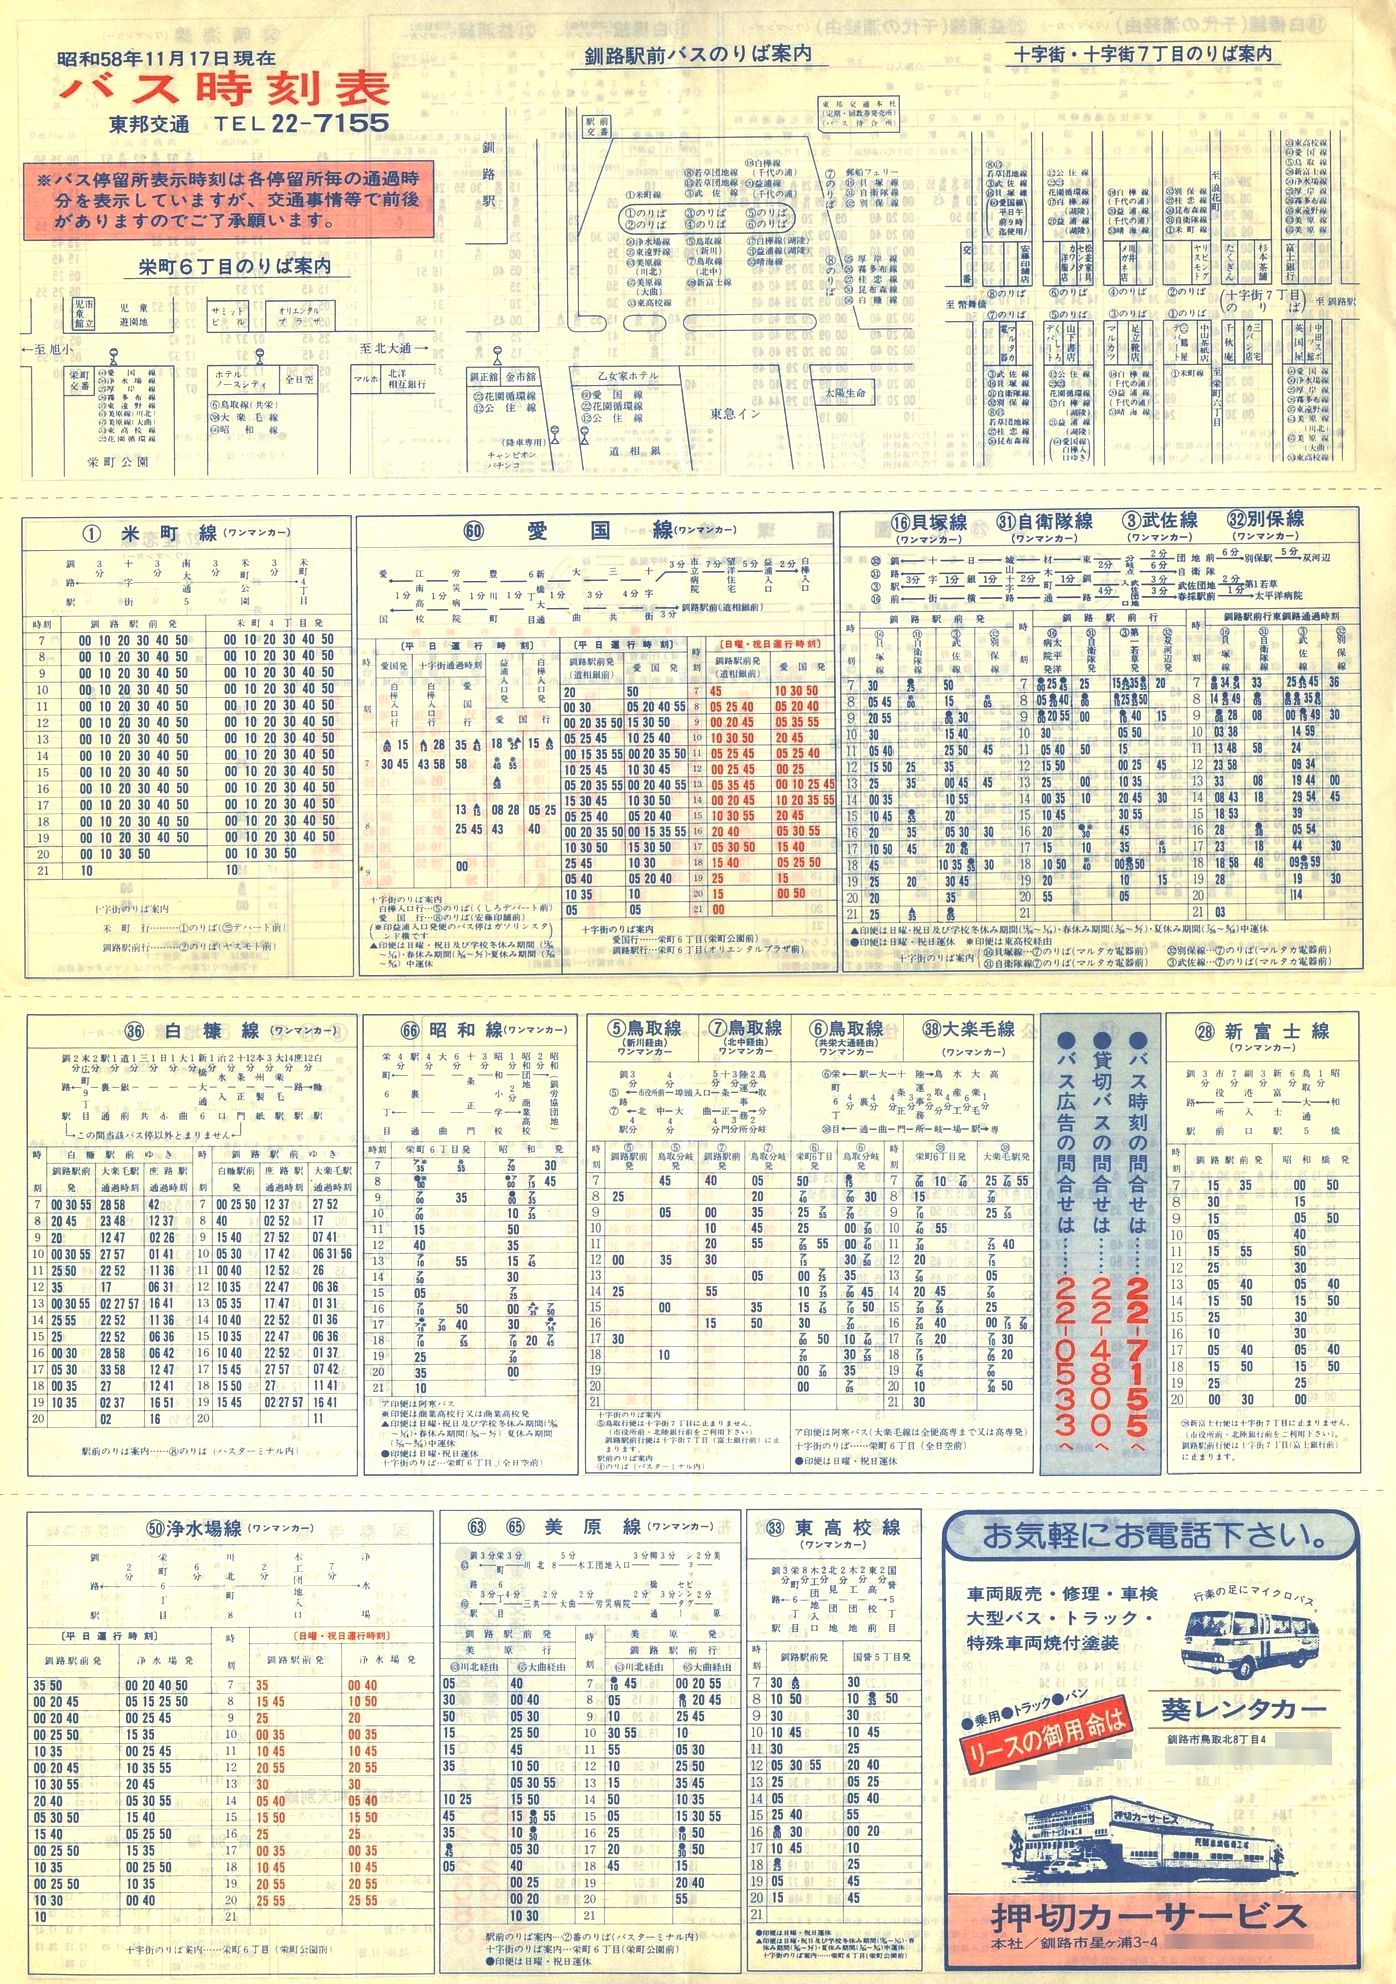 1983-11-17改正_東邦交通_時刻表表面